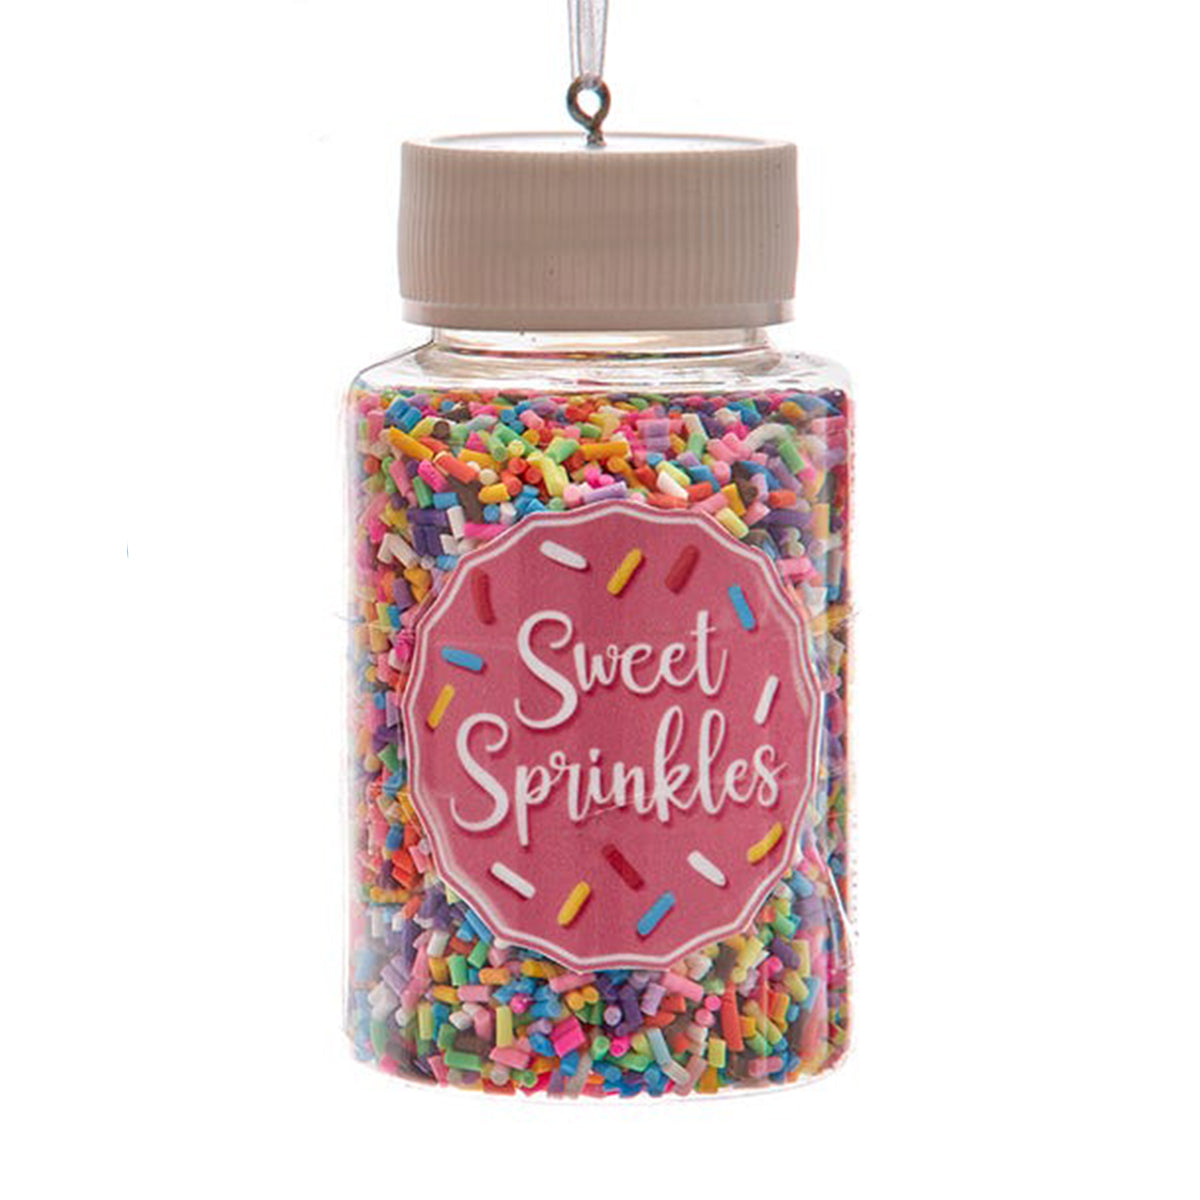 Kurt Adler 3.25" Sweet Sprinkles Jar